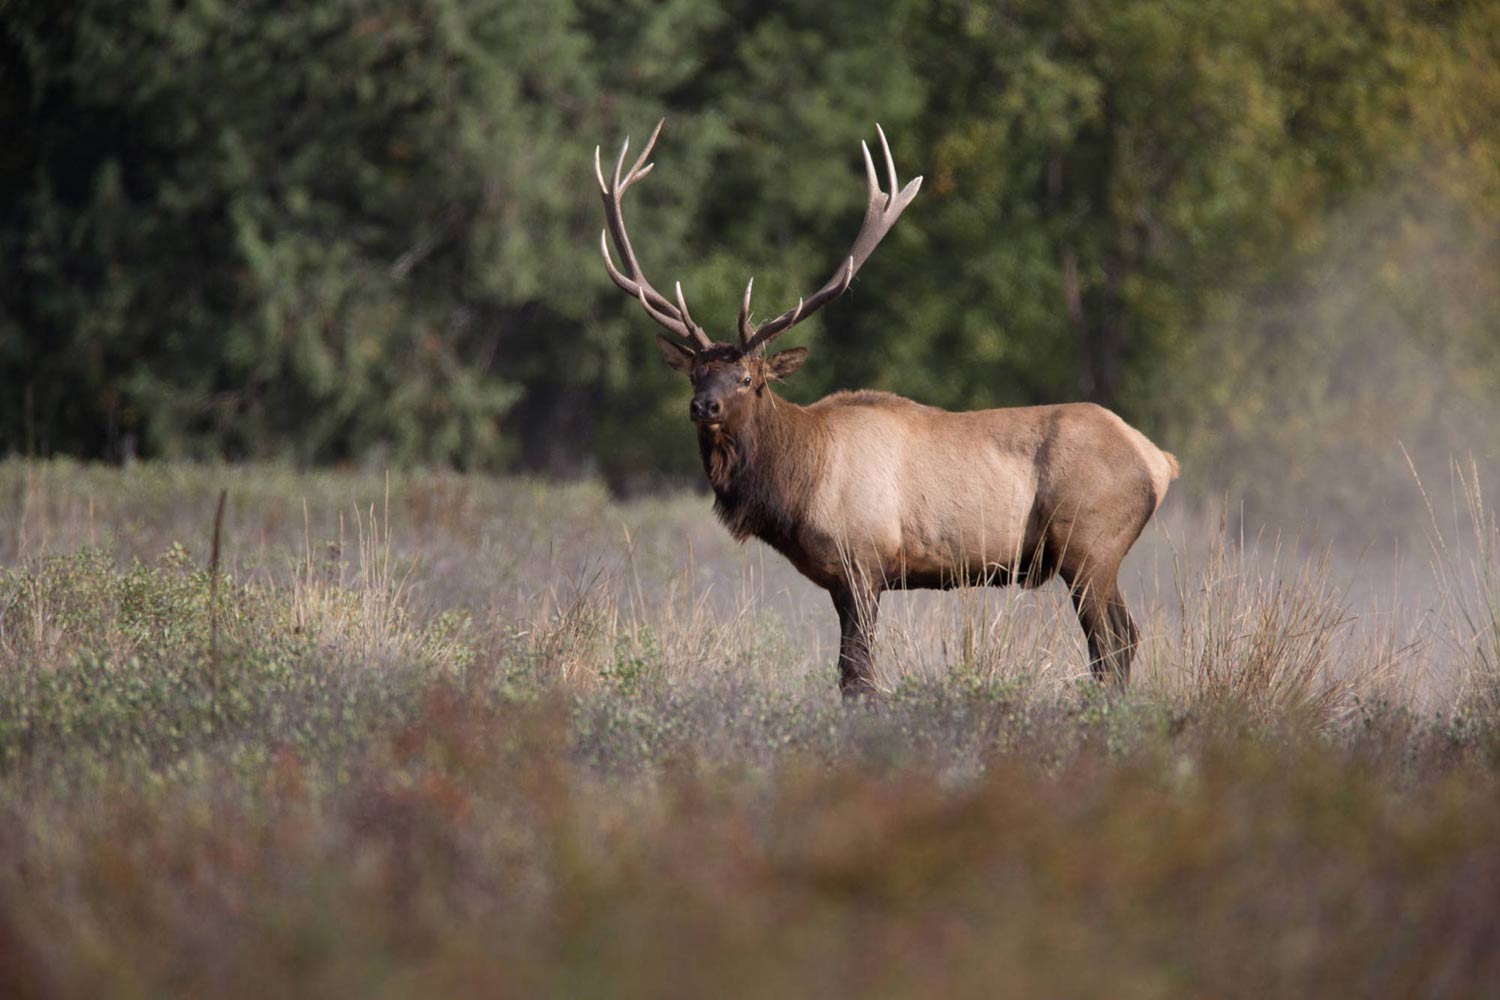 Pike National Forest large elk.